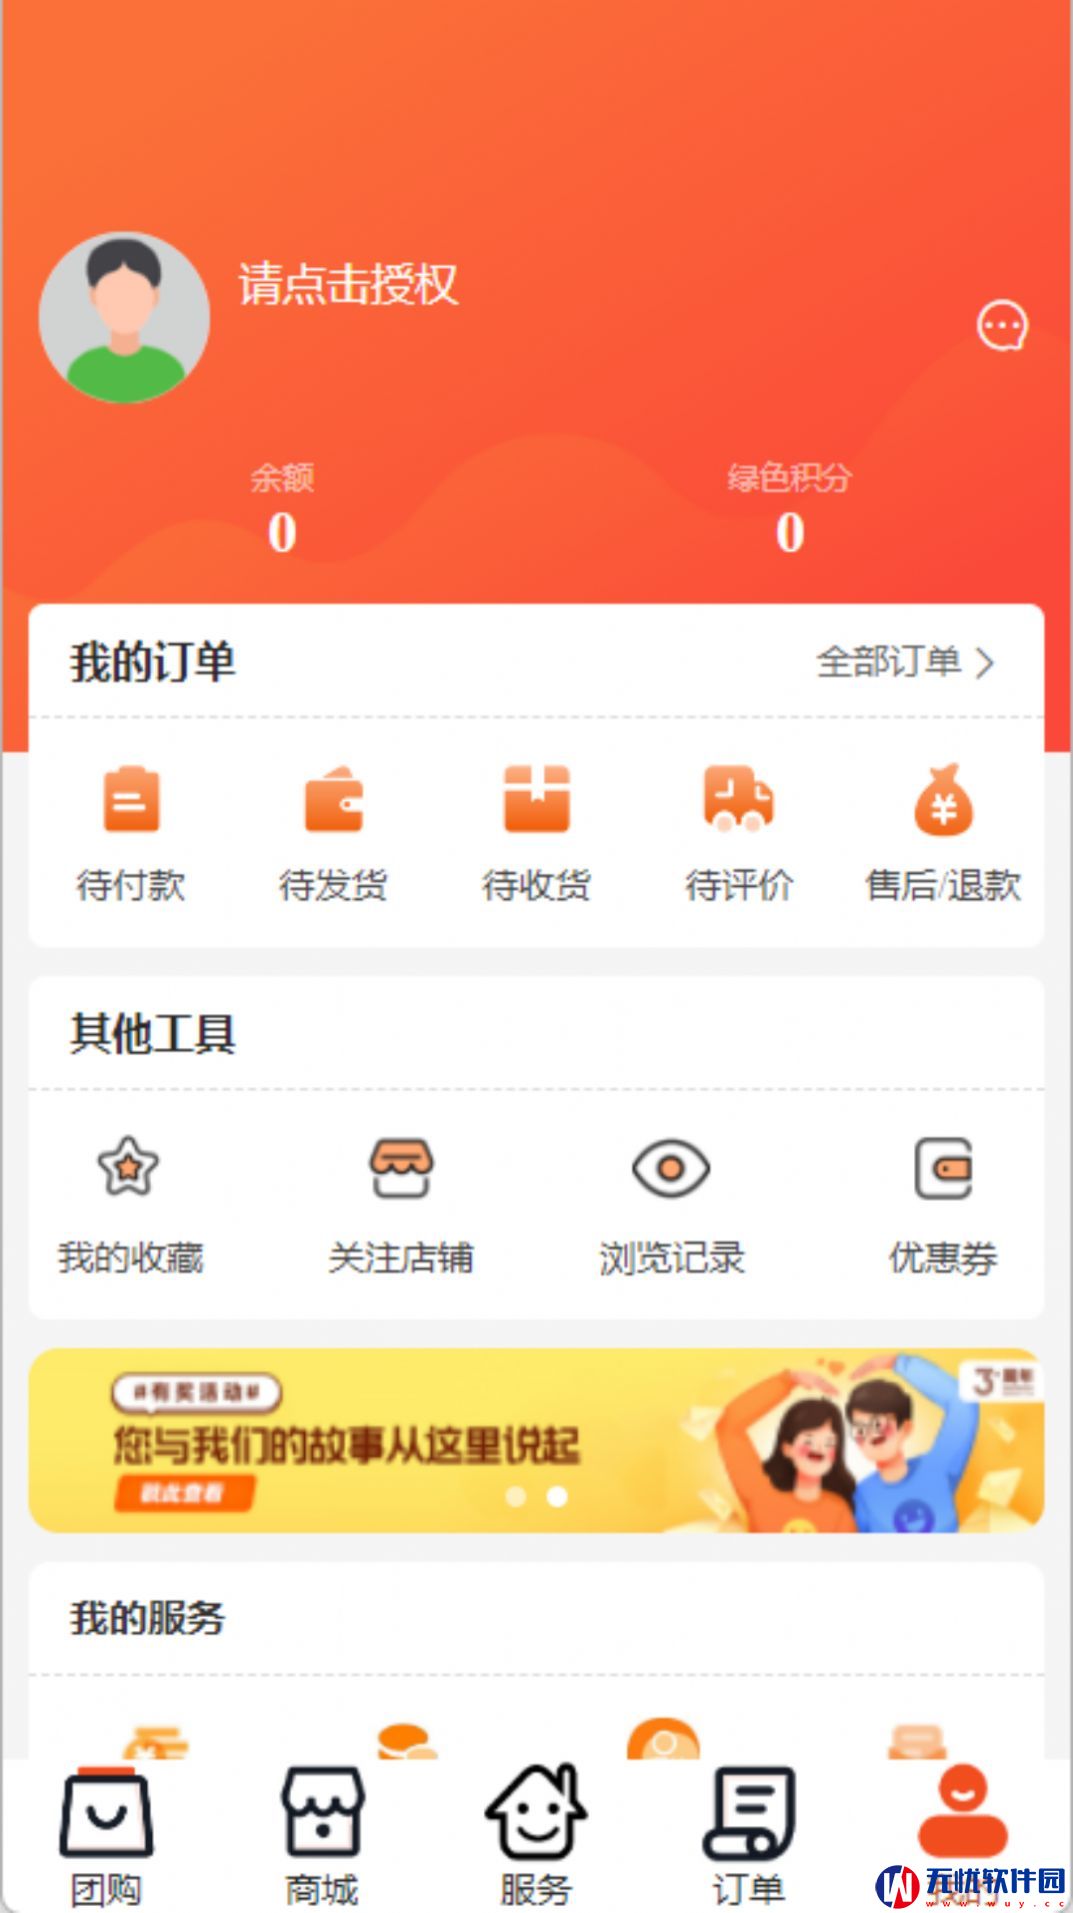 怡蜂恋生活社区平台手机版app 